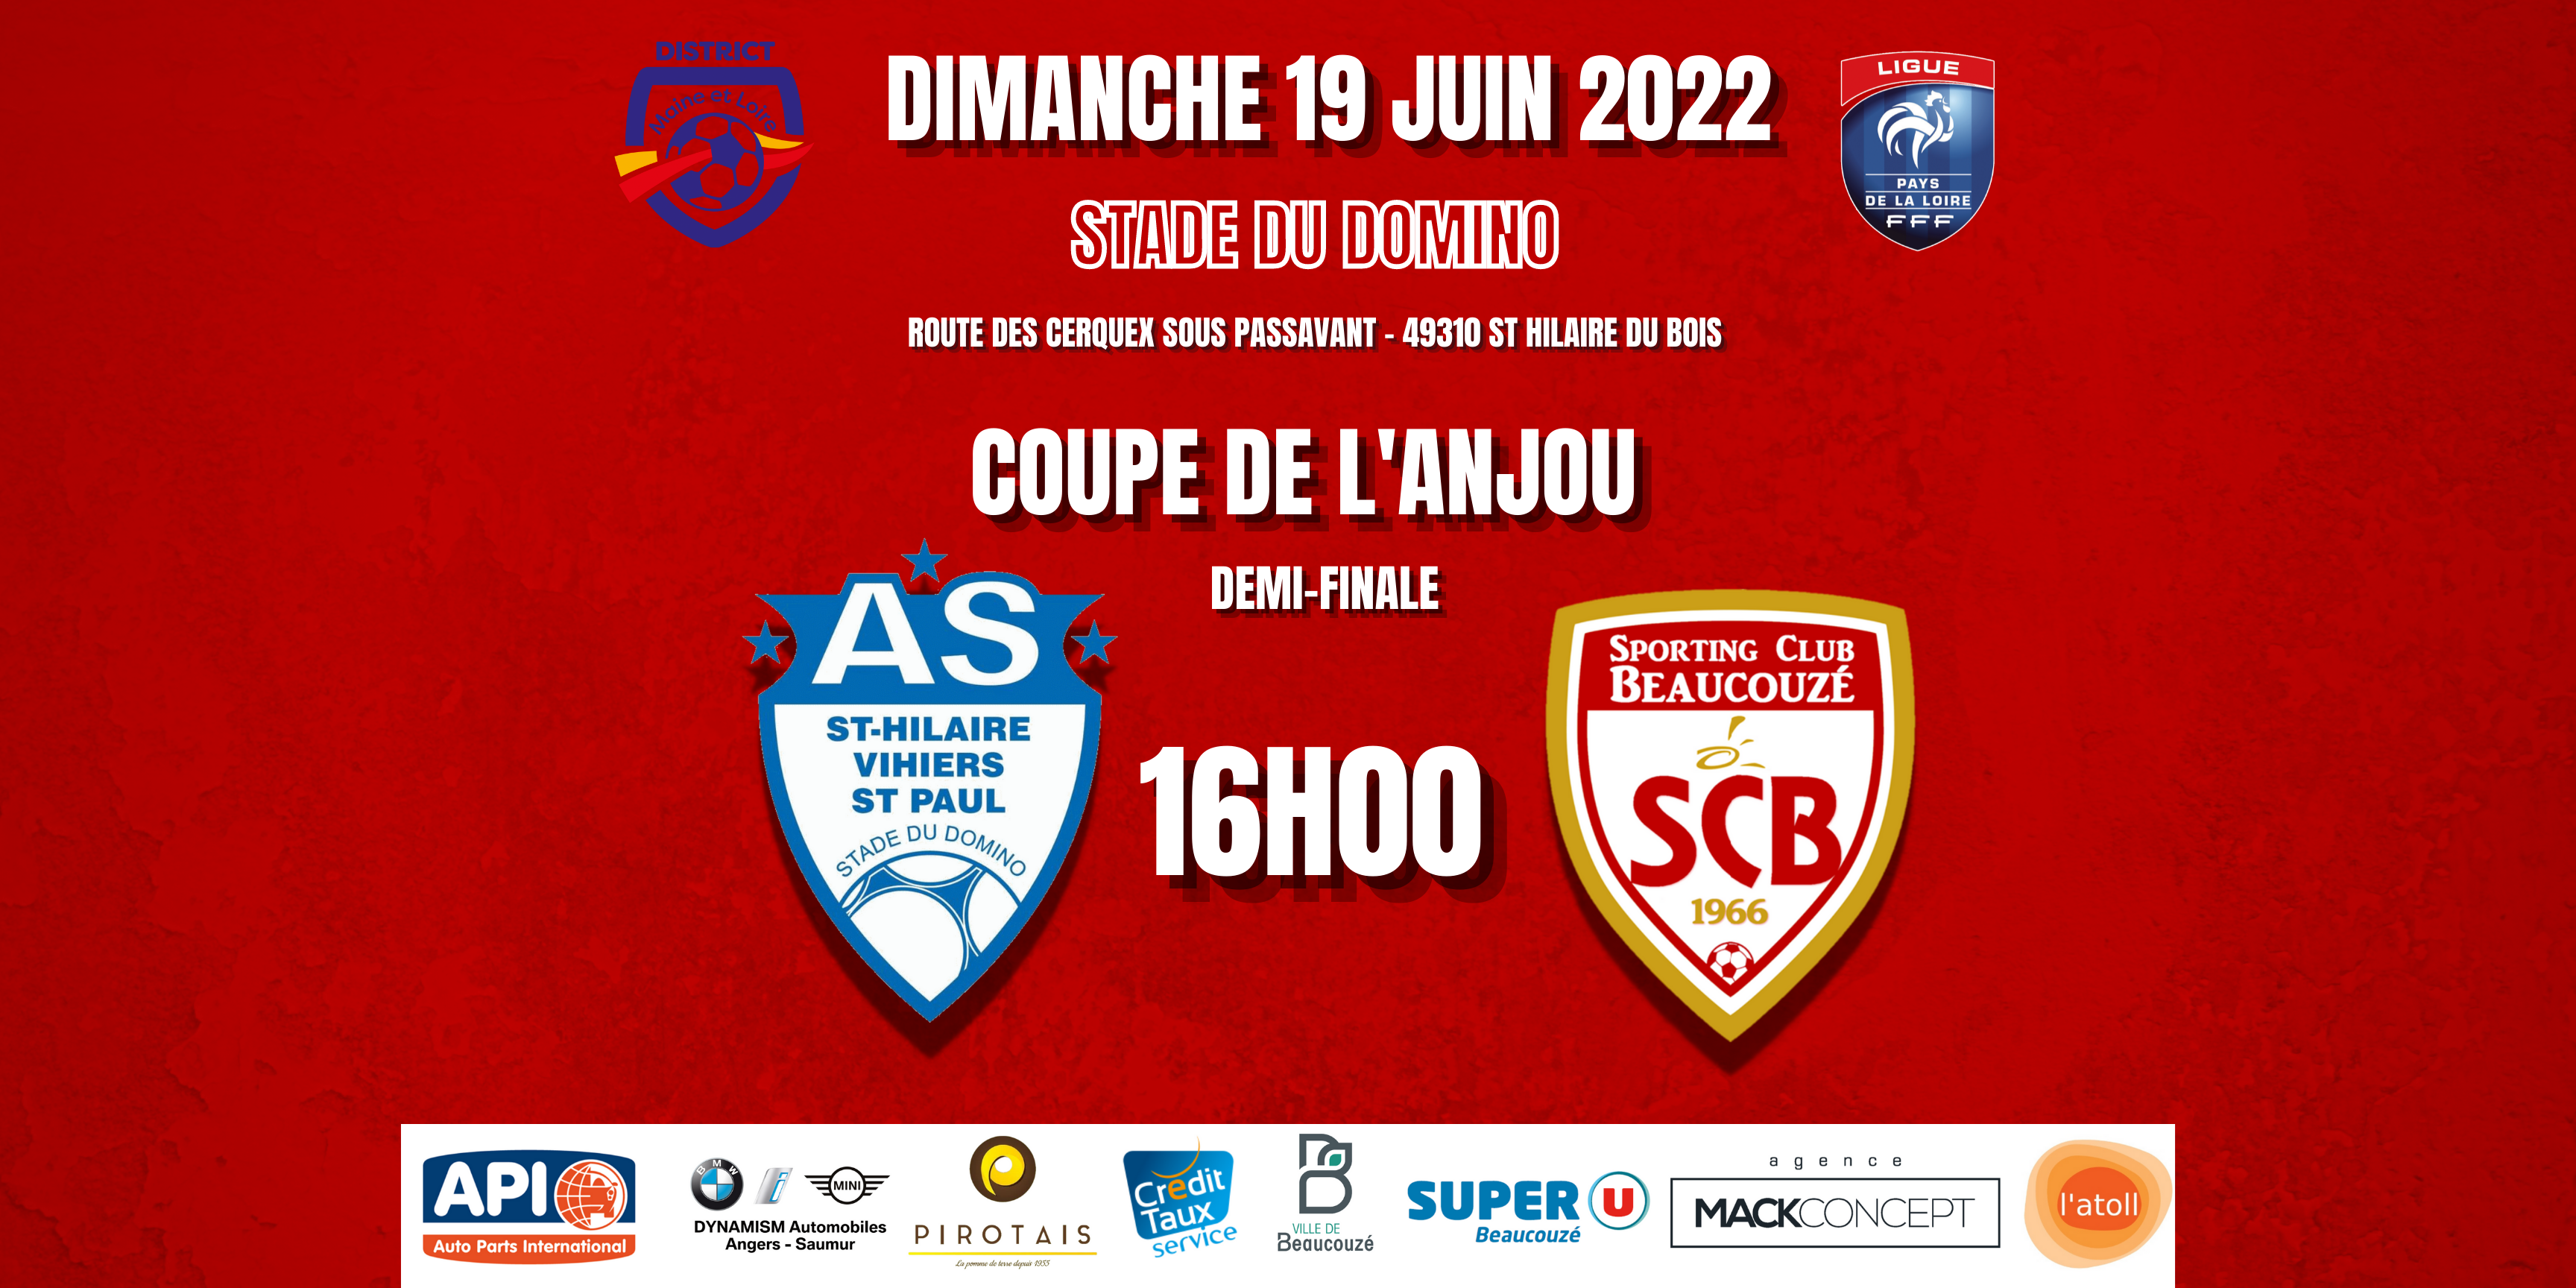 Demi-Finale St Hilaire Vihiers R3 vs Sporting Club Beaucouzé ce Dimanche 19 juin à 16h00 !